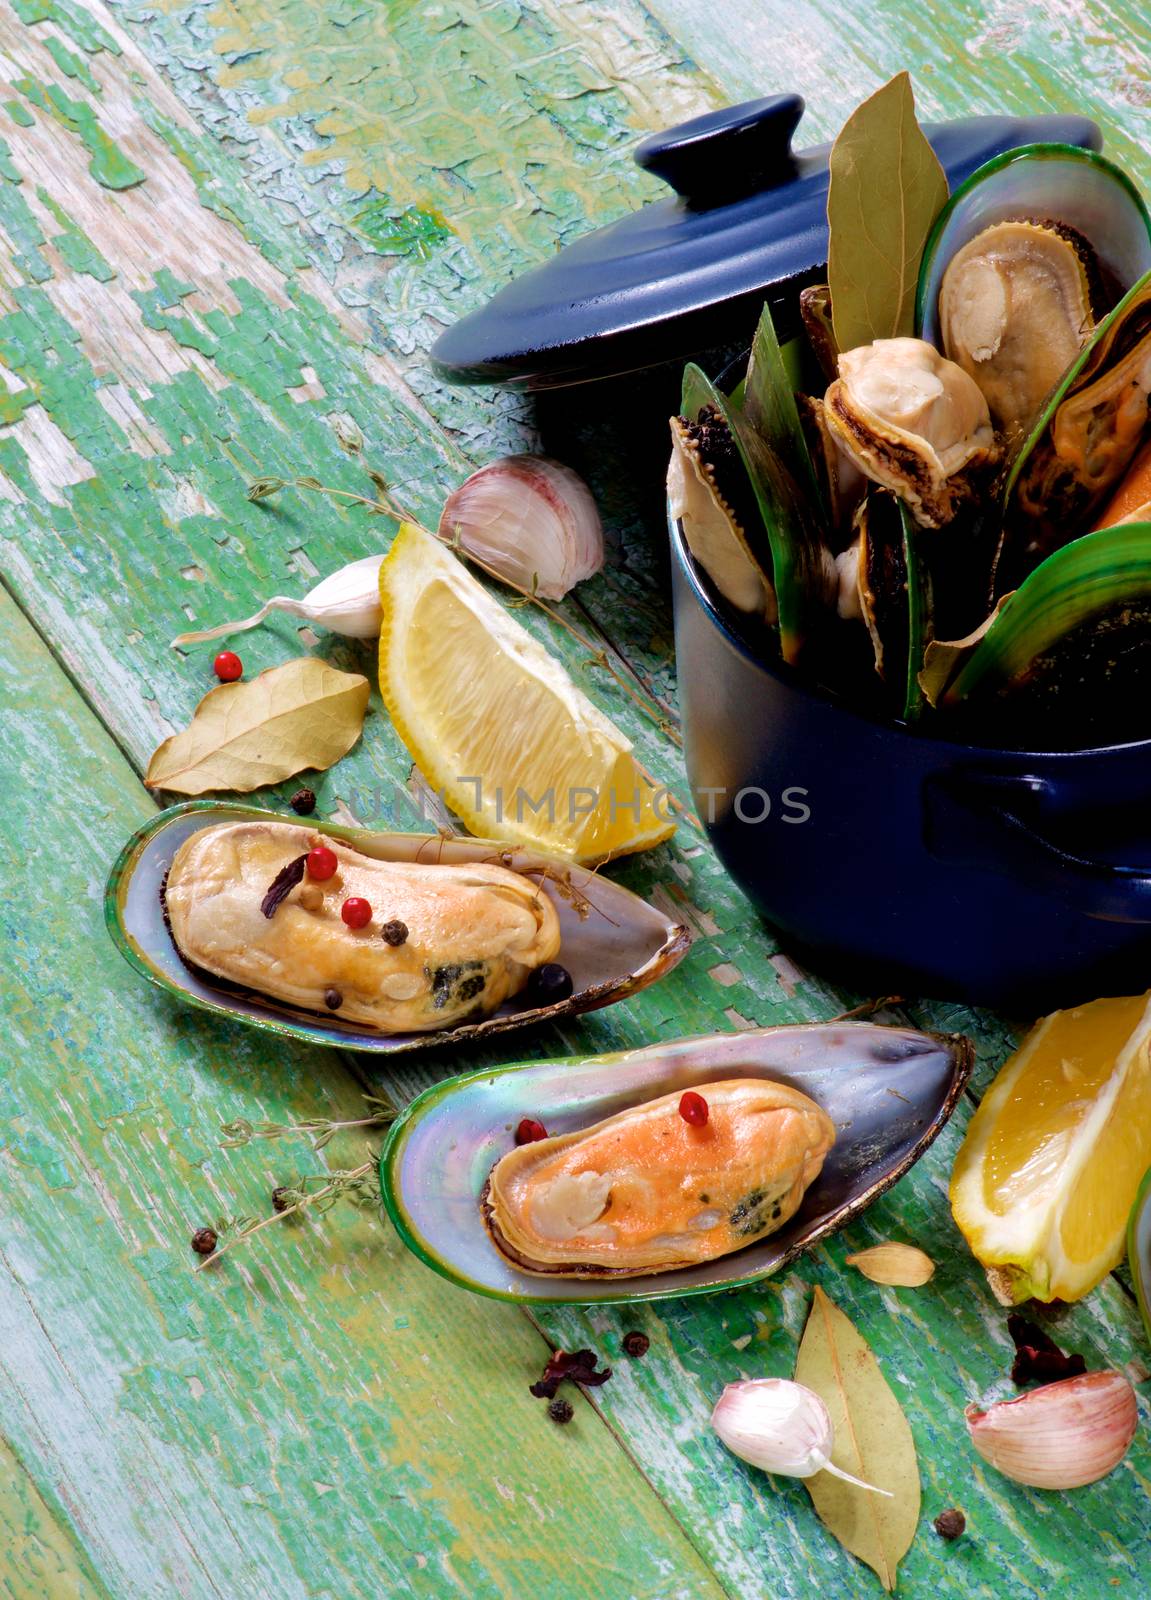 Boiled Green Mussels by zhekos